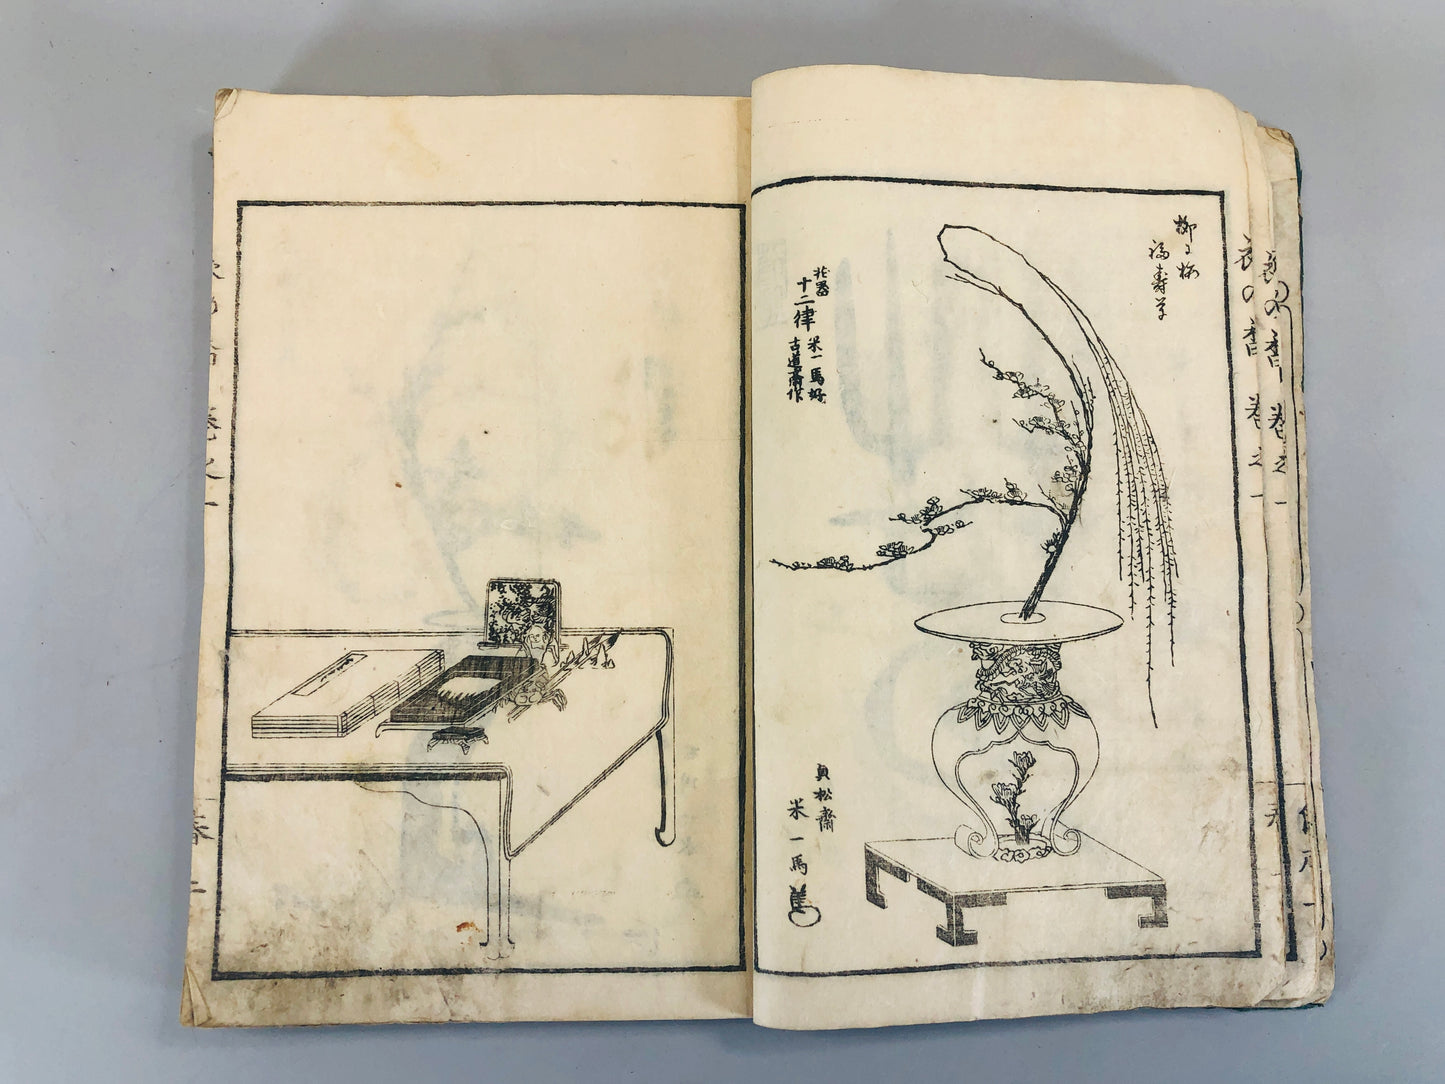 Y5459 WOODBLOCK PRINT Japanese style book textbook Japan Ukiyoe vintage antique